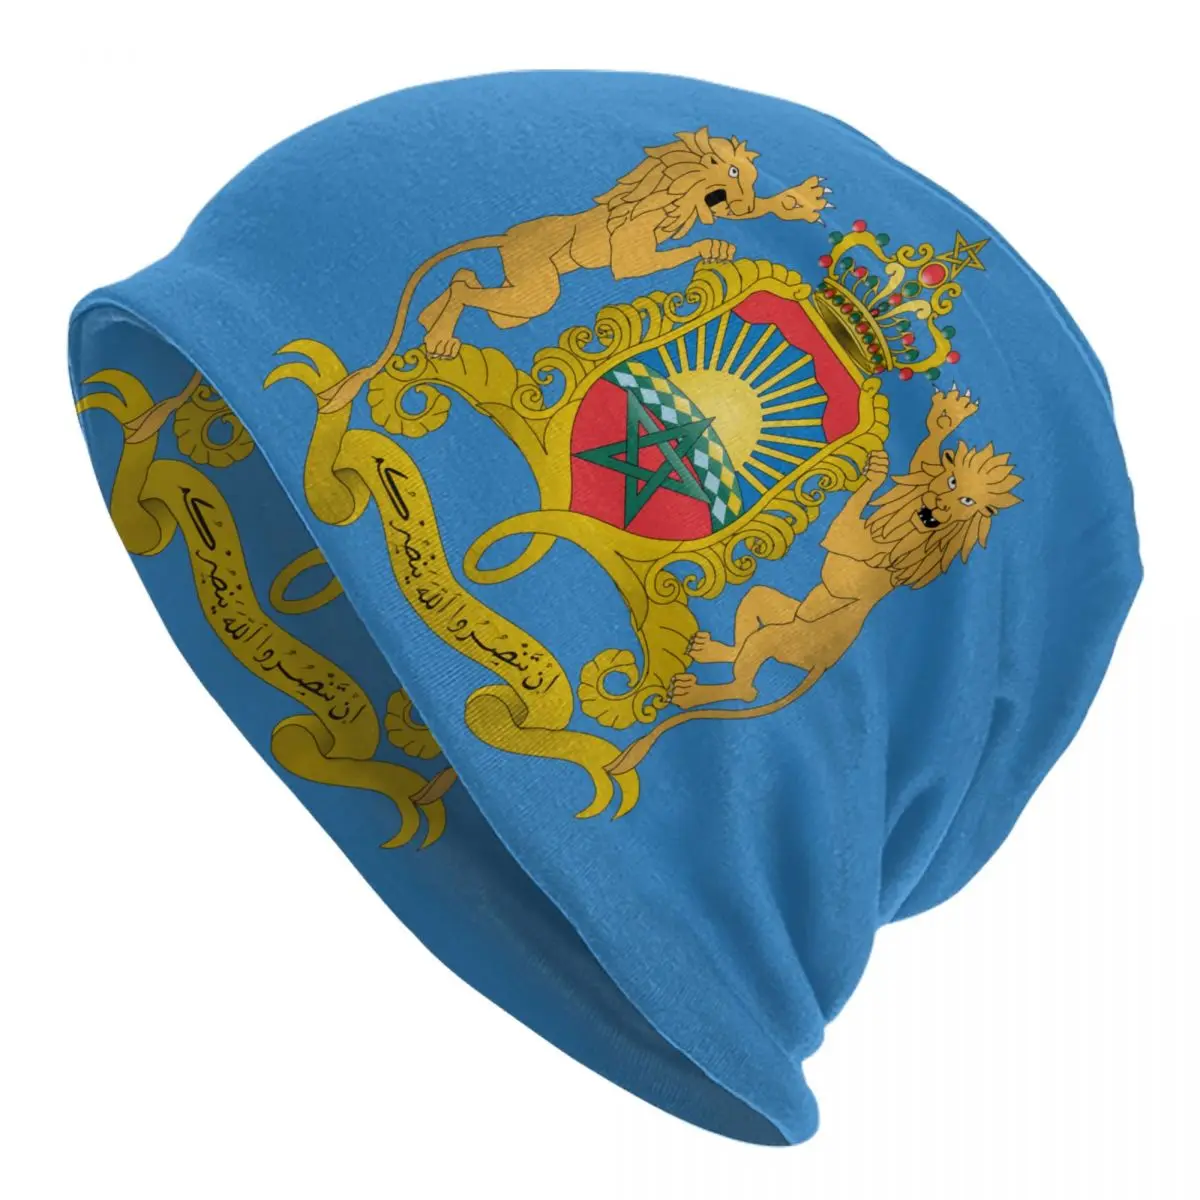 

Облегающая шапка Kingdom Of Марокко, зимняя теплая шапка унисекс, мужские вязаные шапки, уличные лыжные марокканские патриотические шапочки, об...